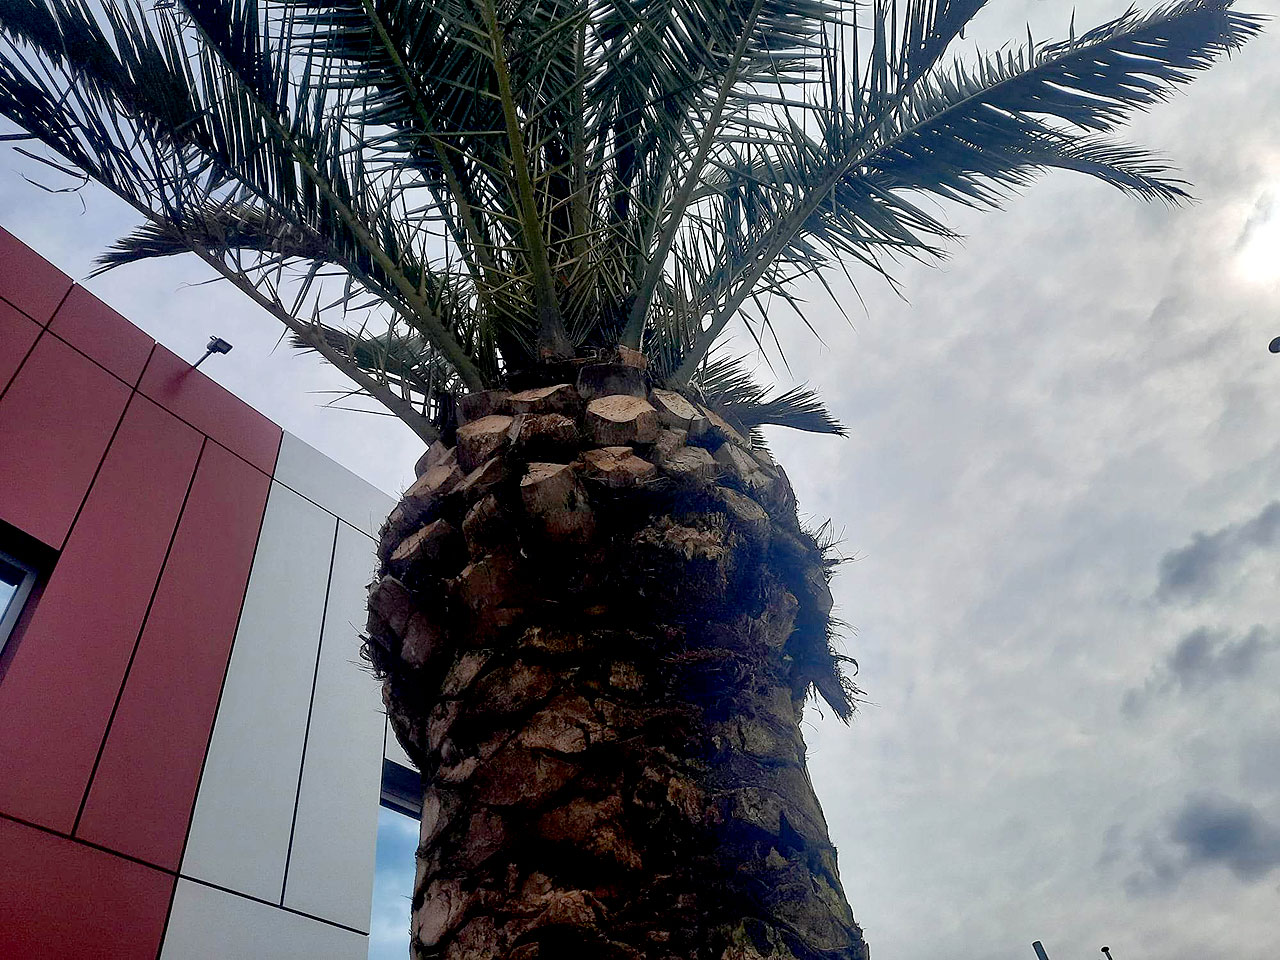 Egzotyczna palma w mieście! To nie Turcja, to wciąż Turek!